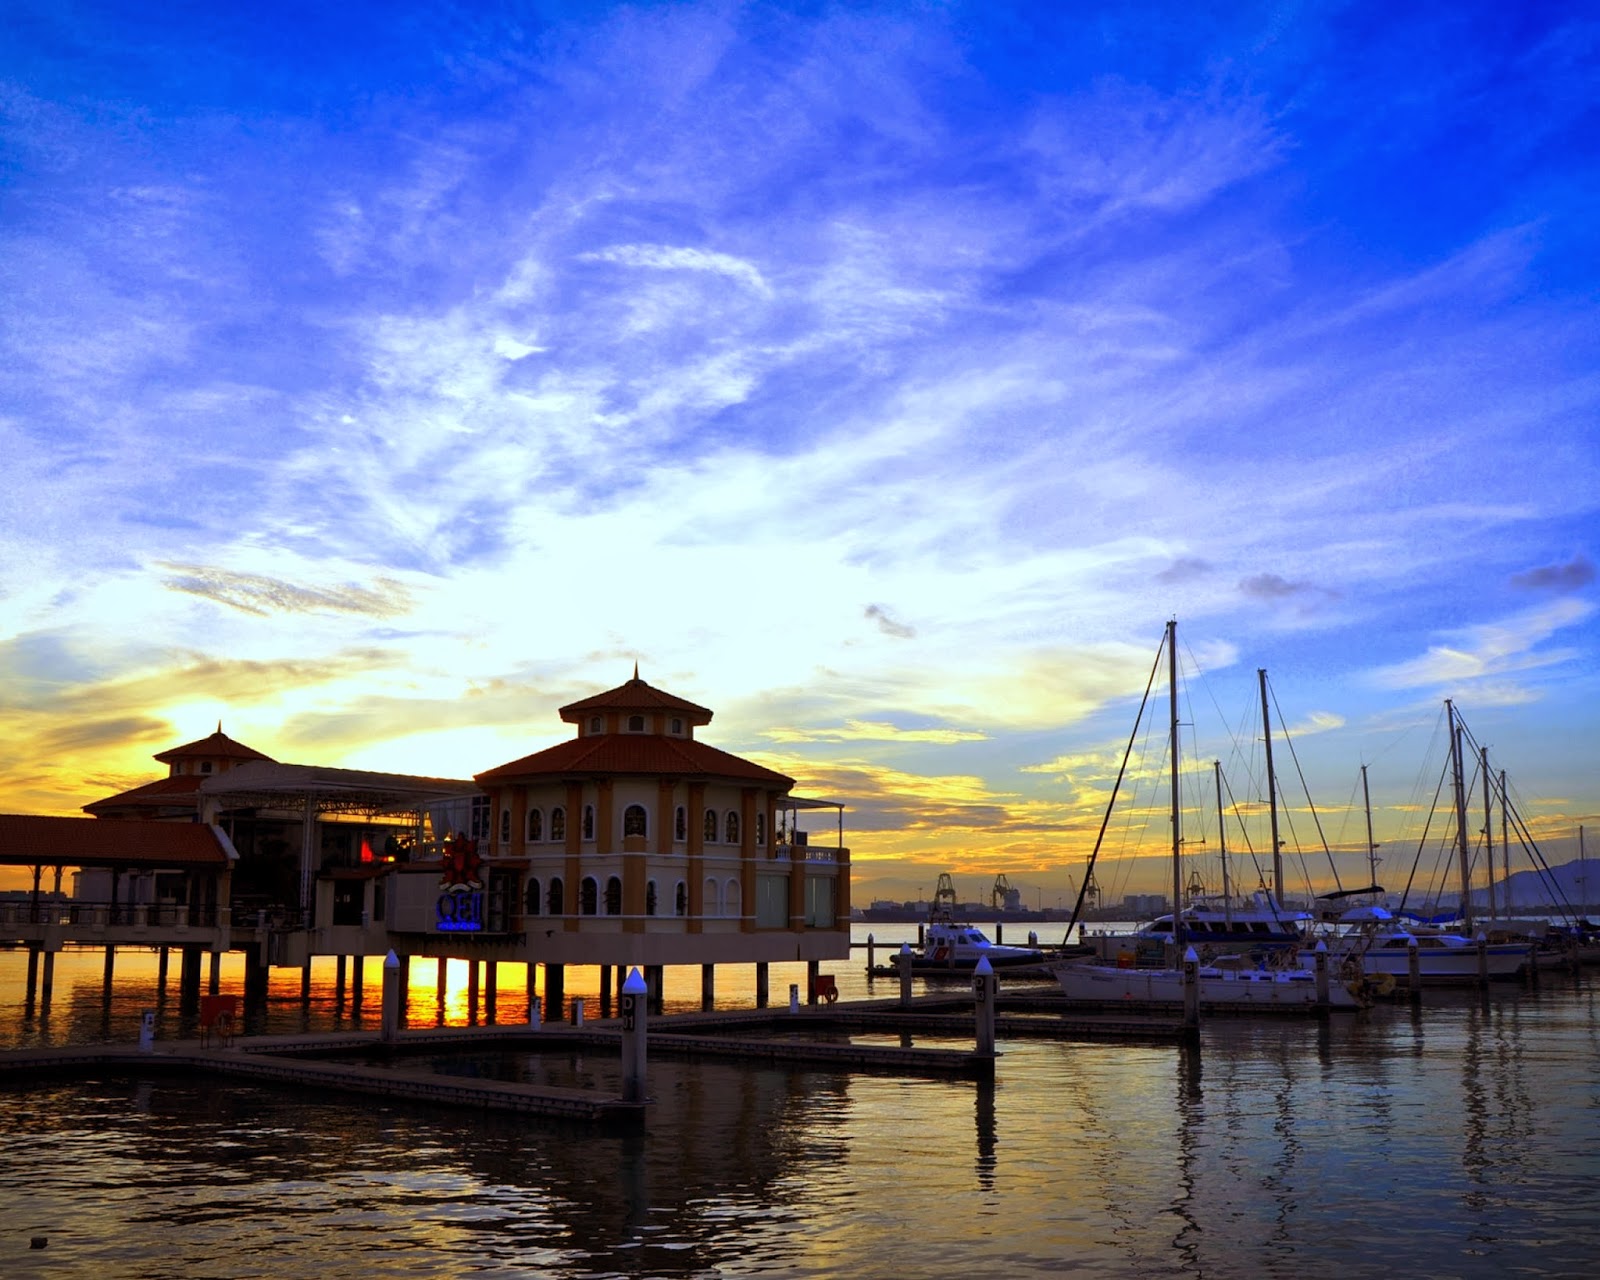 Senarai Tempat-Tempat Menarik Di Pulau Pinang | www.sobriyaacob.com